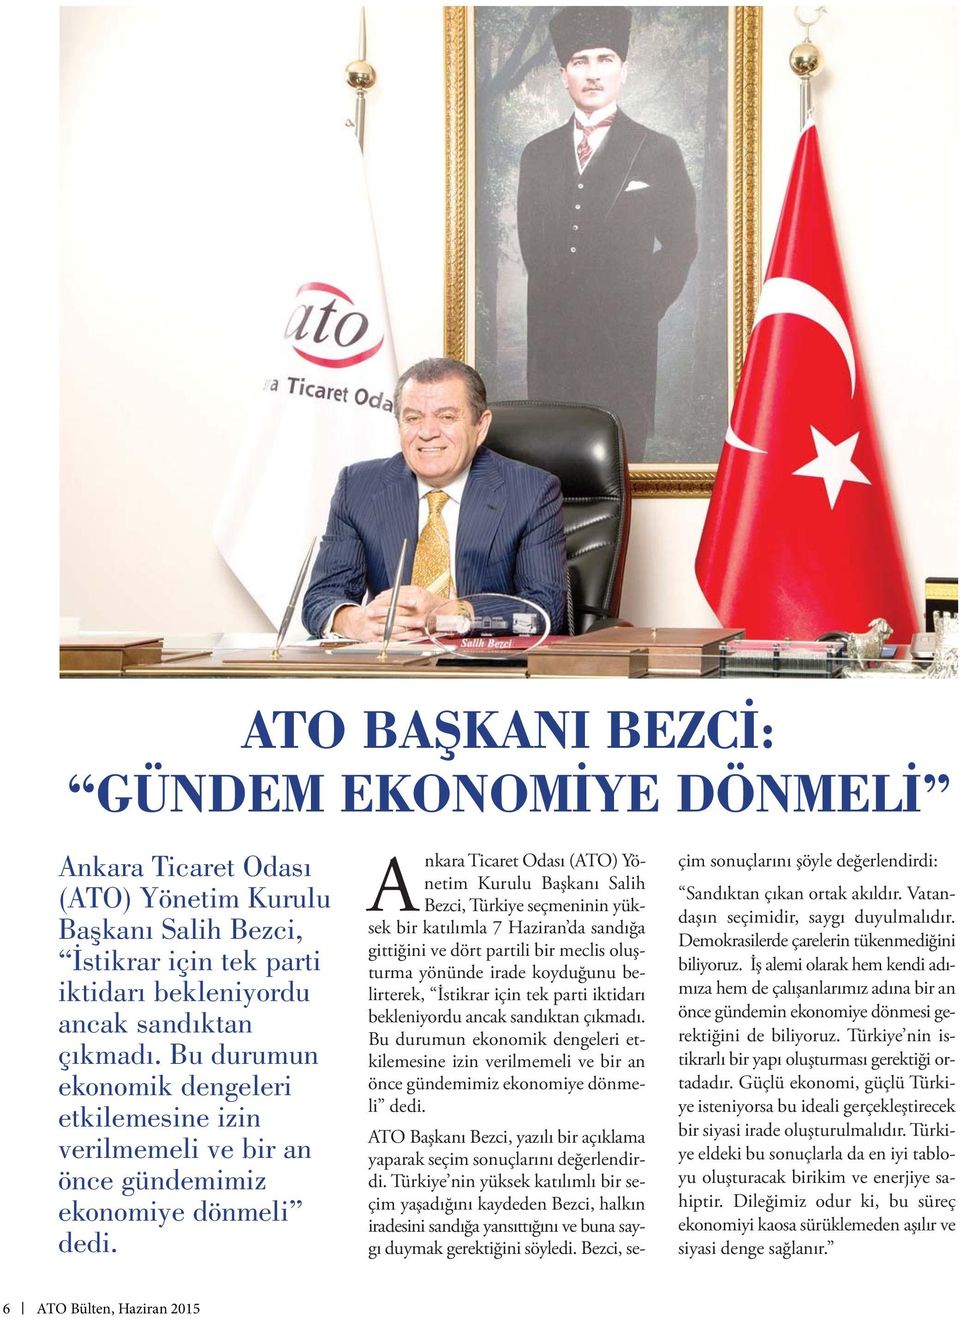 Ankara Ticaret Odası (ATO) Yönetim Kurulu Başkanı Salih Bezci, Türkiye seçmeninin yüksek bir katılımla 7 Haziran da sandığa gittiğini ve dört partili bir meclis oluşturma yönünde irade koyduğunu